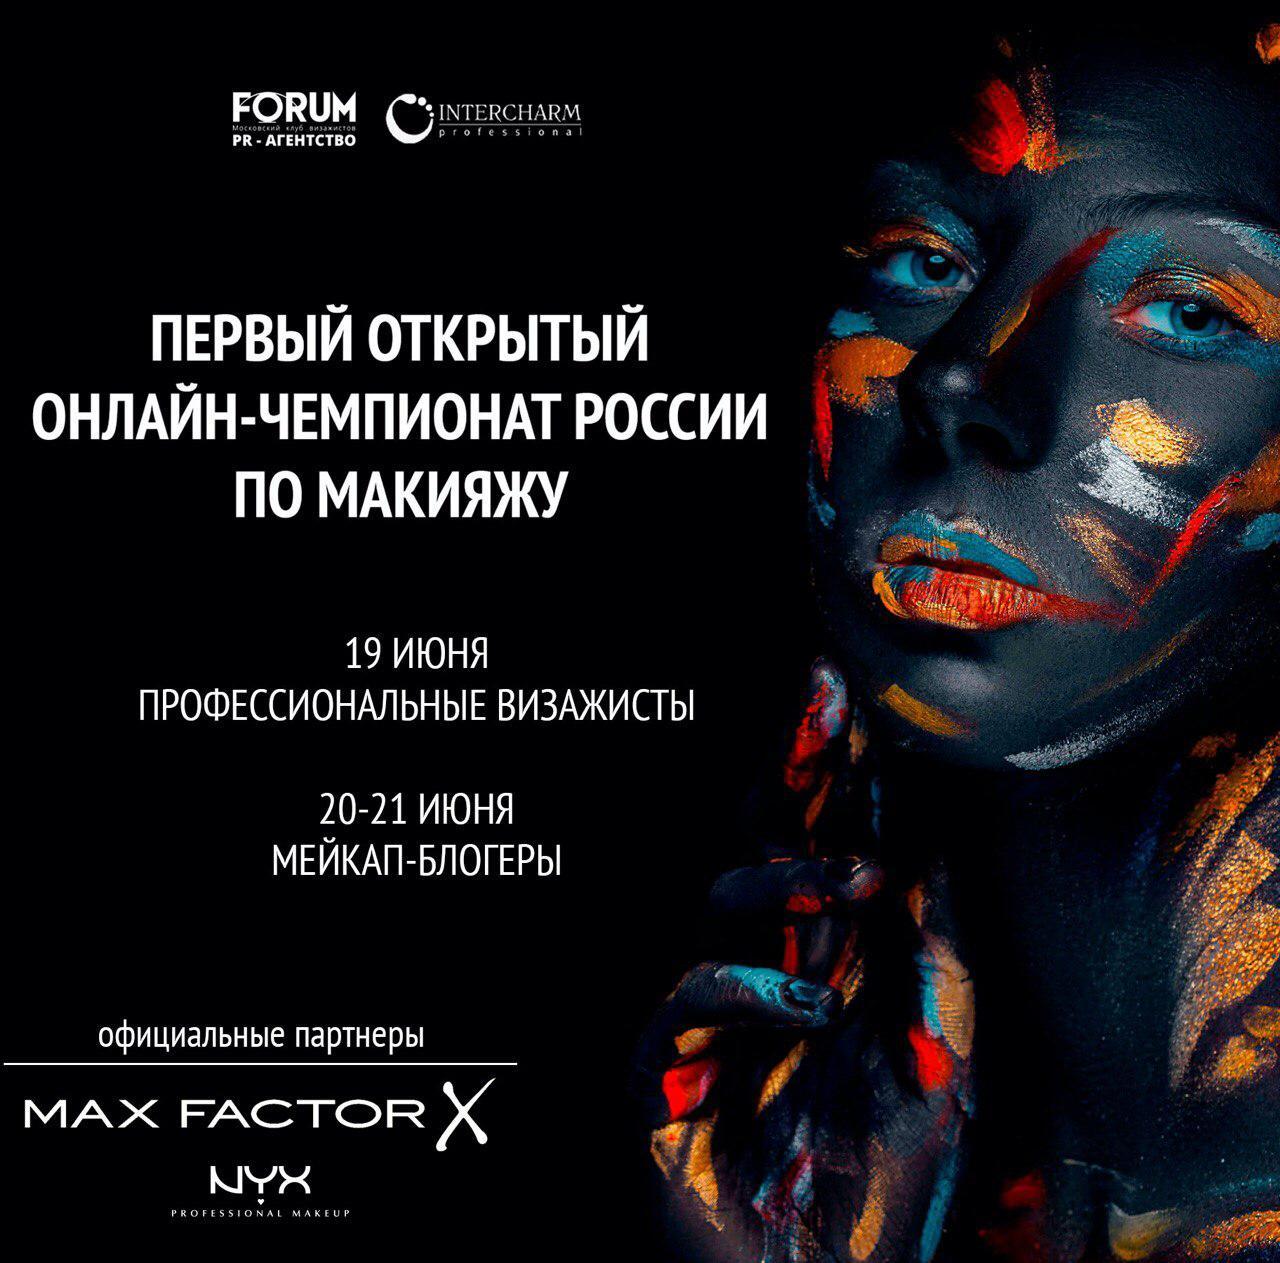 Визажисты и бьюти-блогеры встретятся на первом открытом онлайн-чемпионате России по макияжу